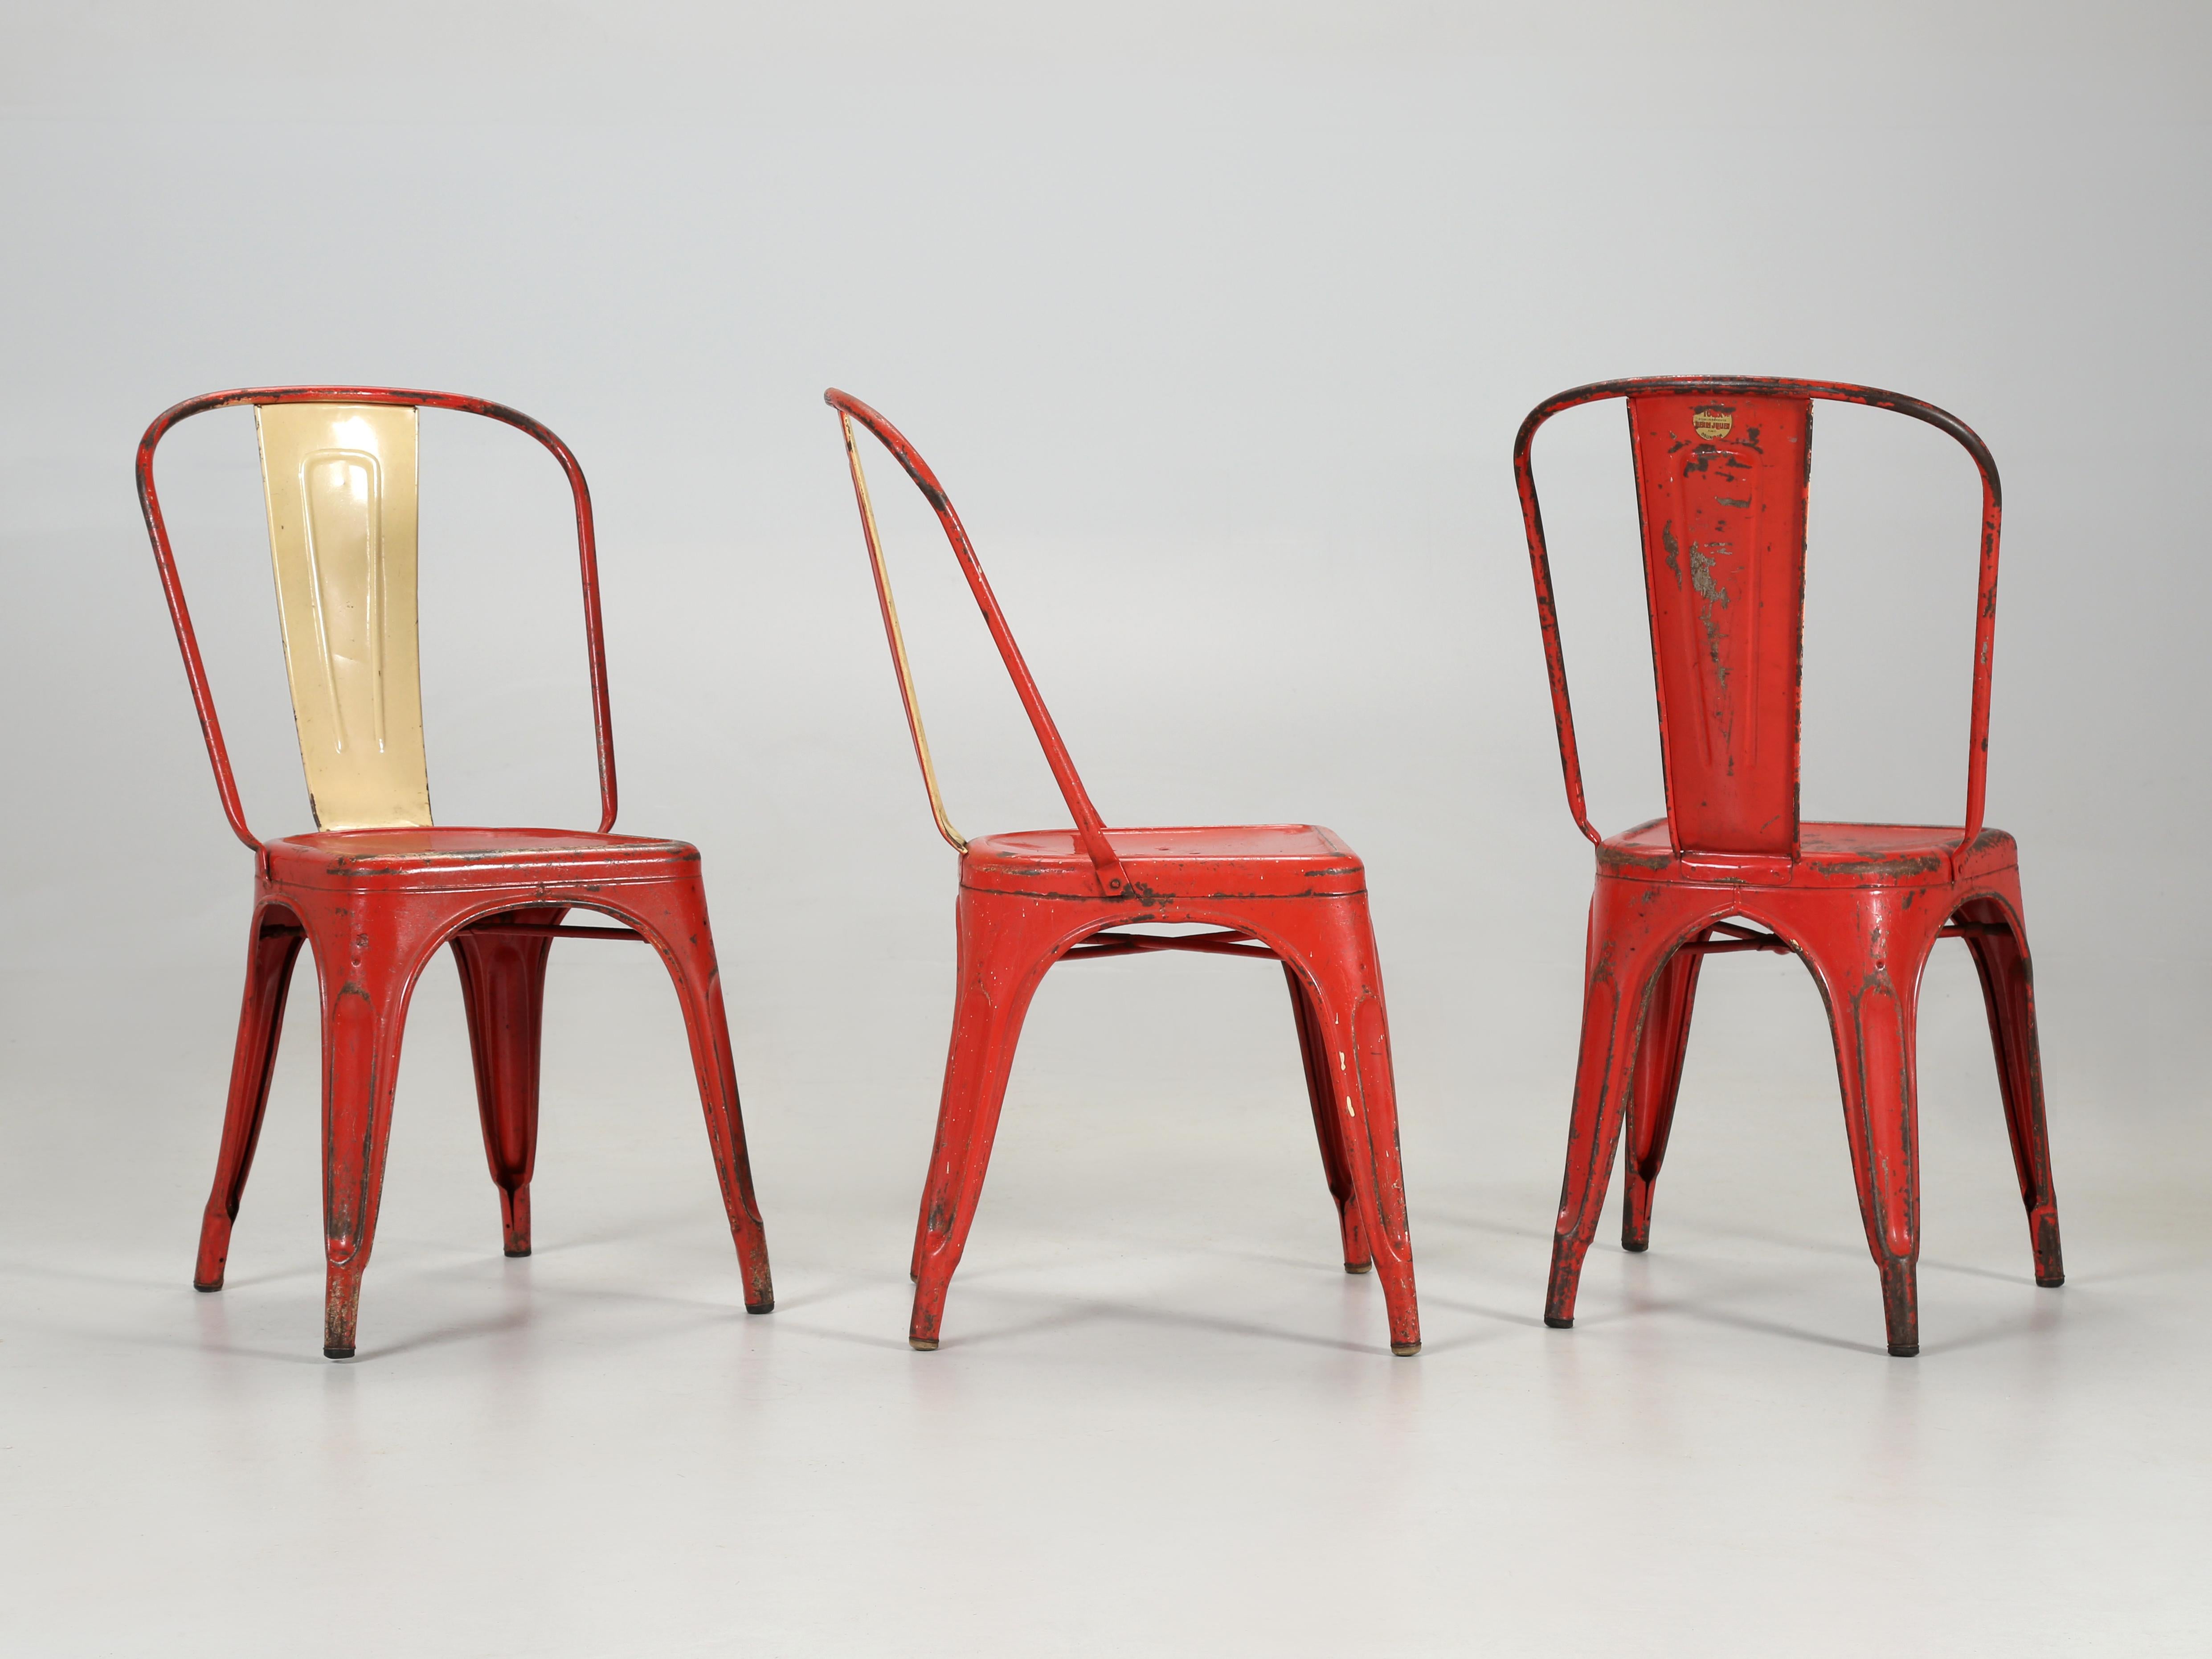 Authentiques chaises européennes Tolix fabriquées à la main, avec leur étiquette dorée TOLIX d'origine. Alors que certains revendeurs prétendent avoir quelques ensembles en stock, nous n'avons pas des dizaines, ou des centaines, nous avons plus d'un